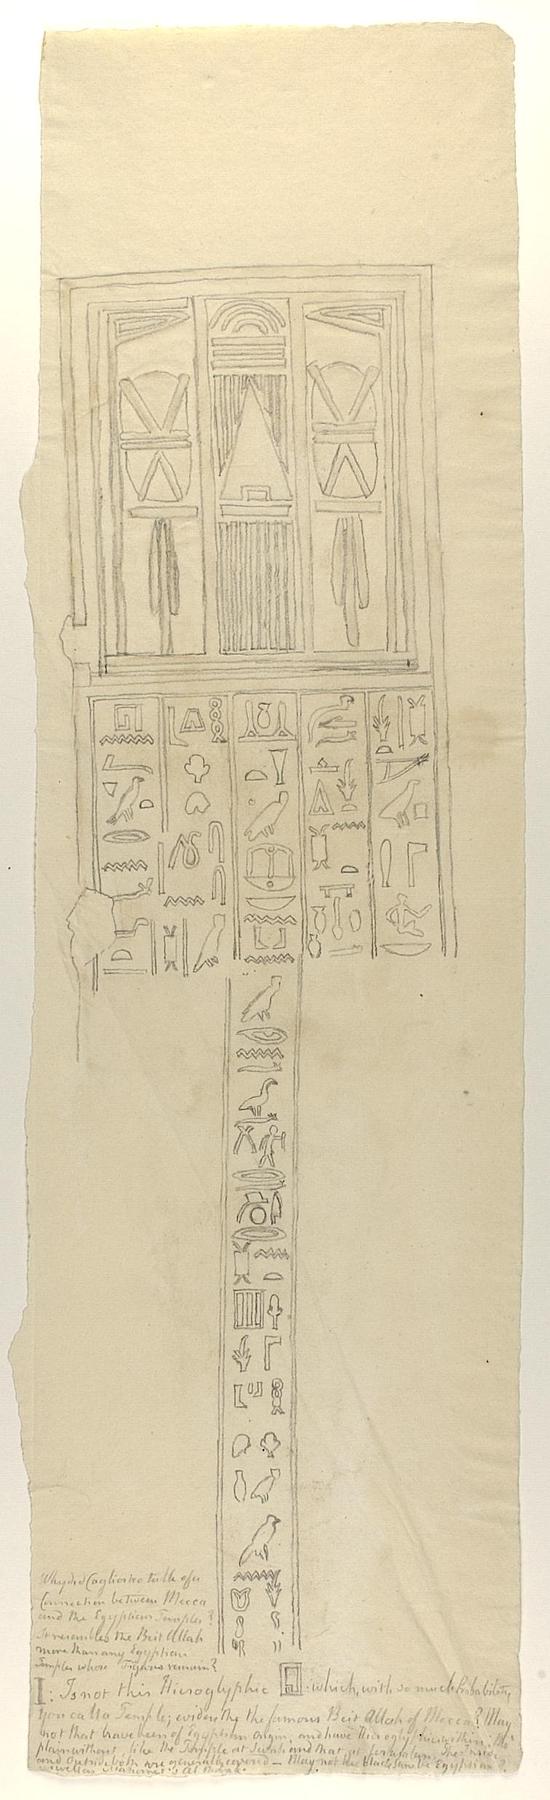 Hieroglyfindskrift, brudstykke, D1186